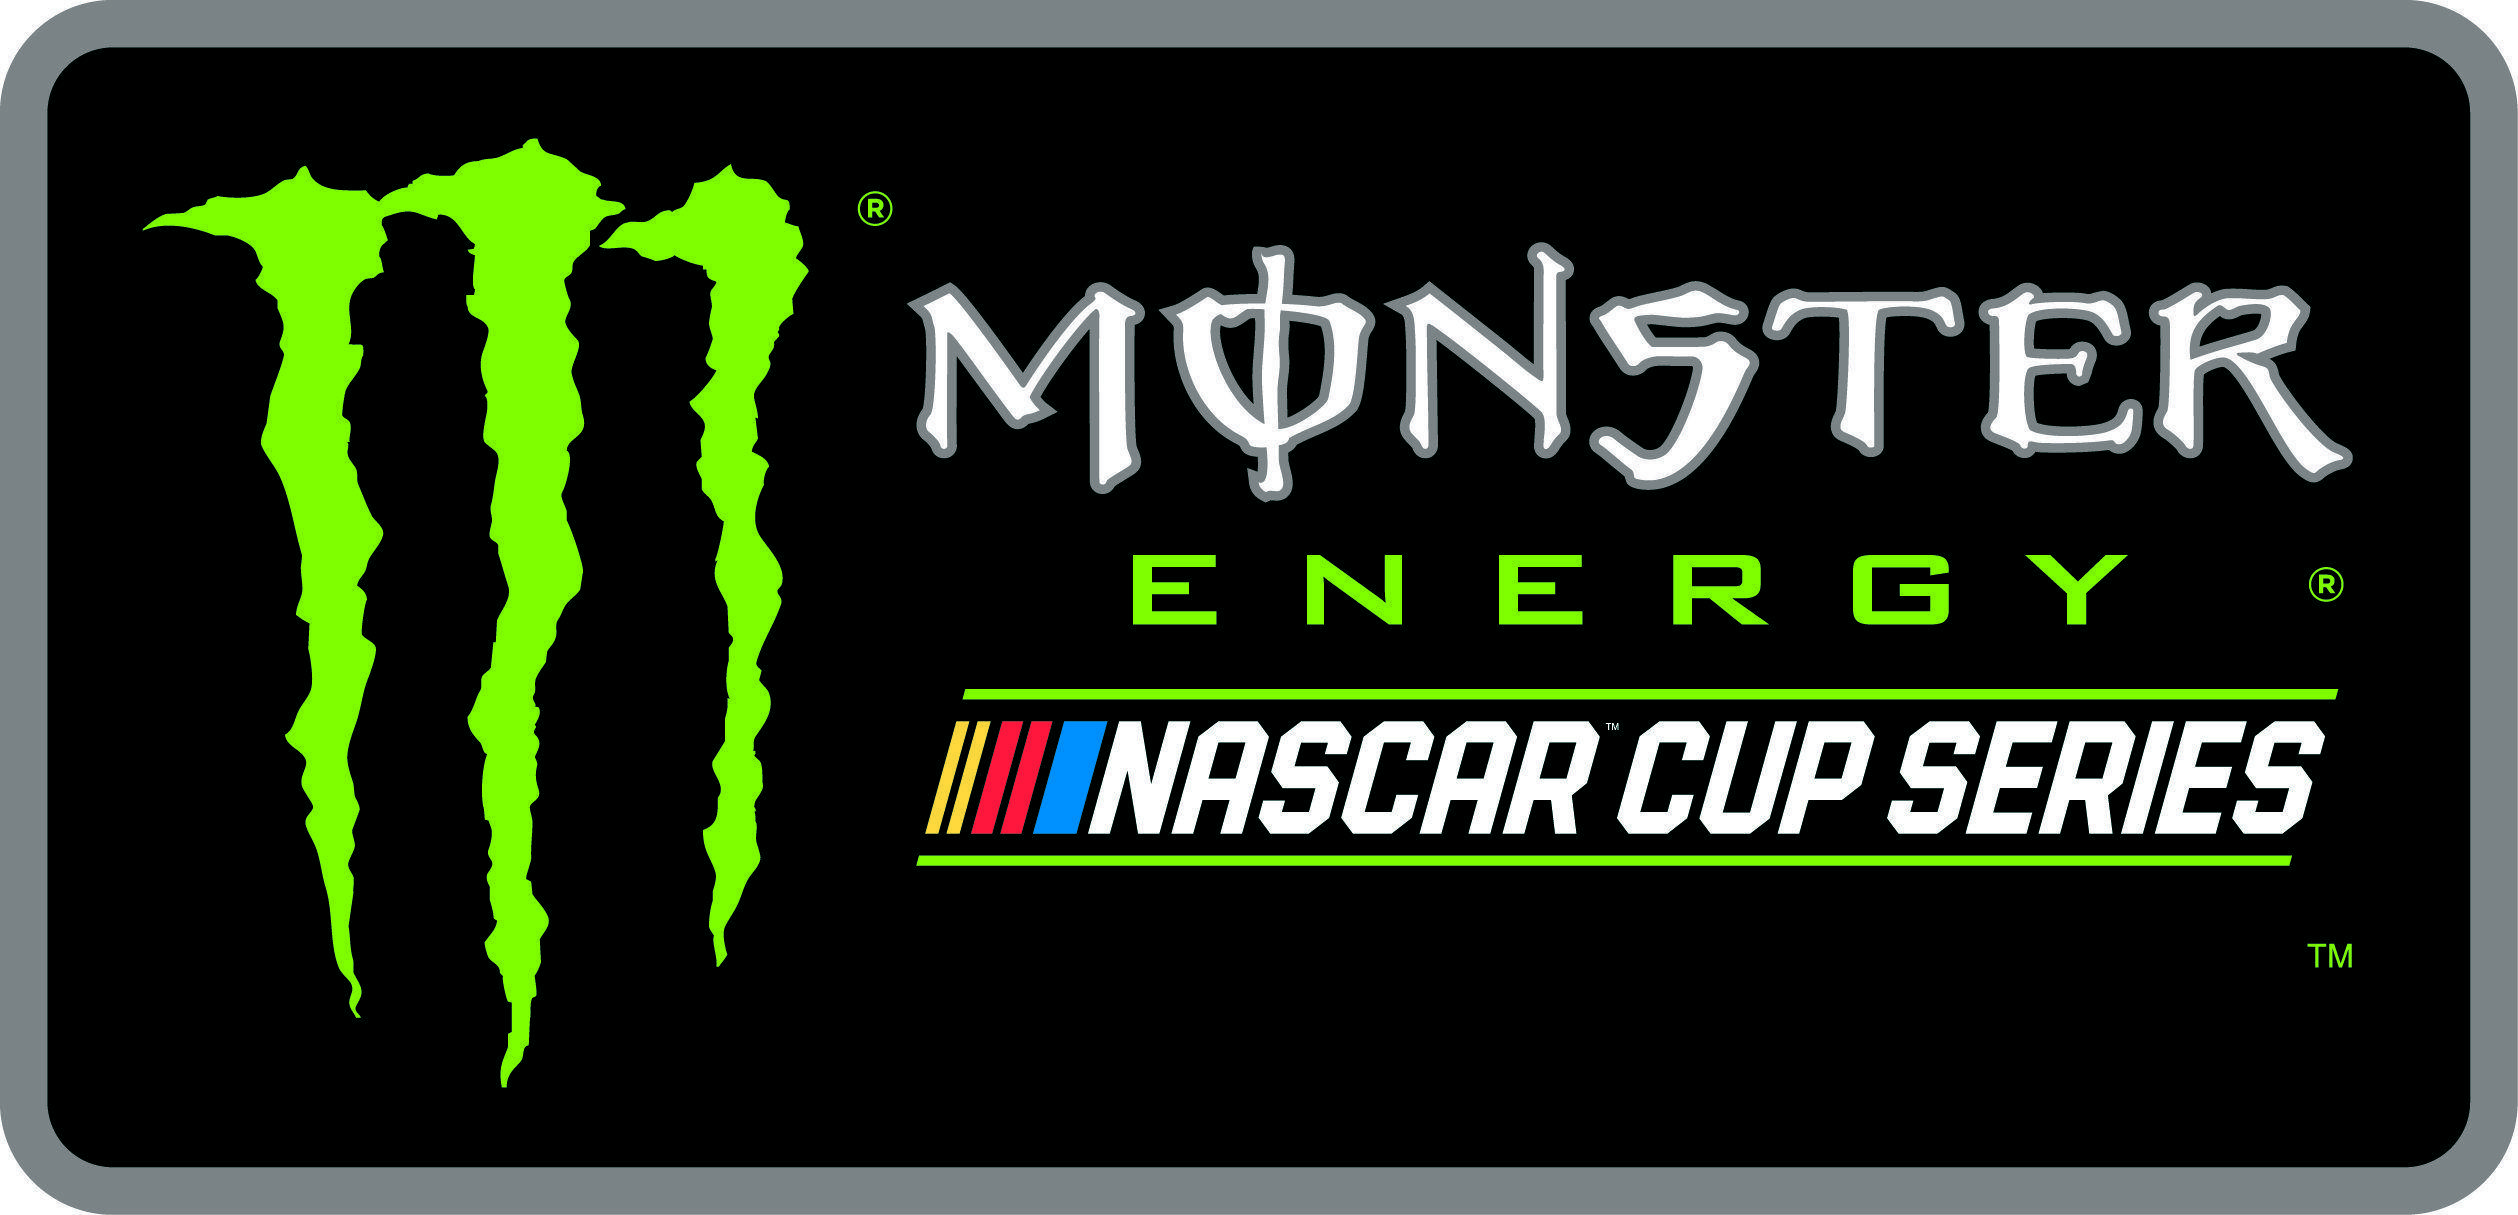 Camo Monster Energy Logo - New NASCAR Logo and Monster Energy NASCAR Cup Series Logo